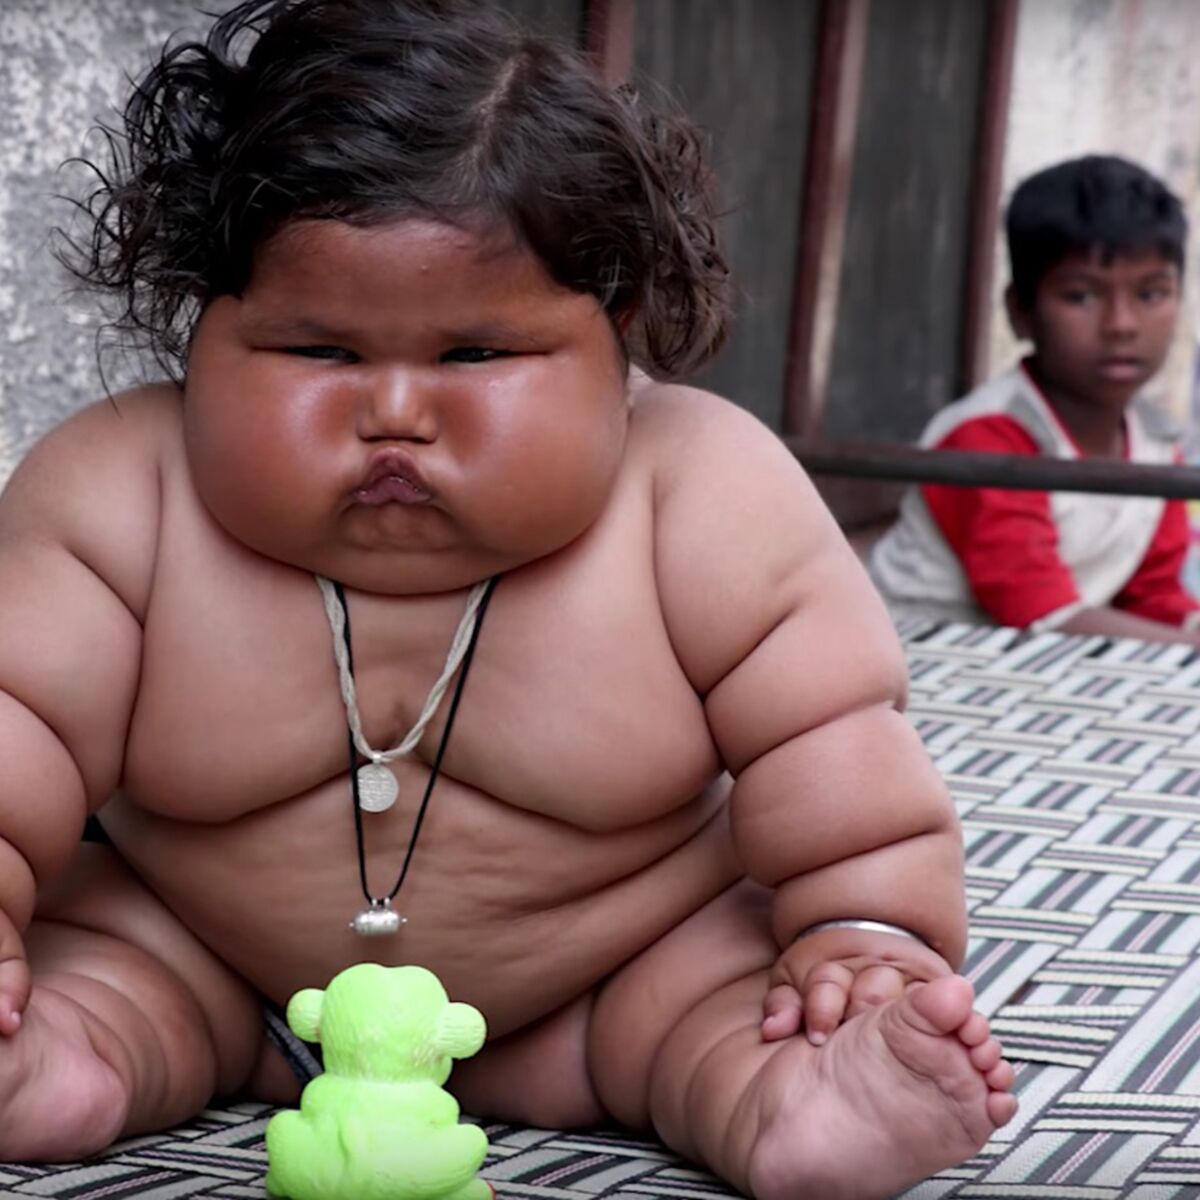 Cette petite Indienne de 8 mois pèse le poids d'un enfant de 4 ans